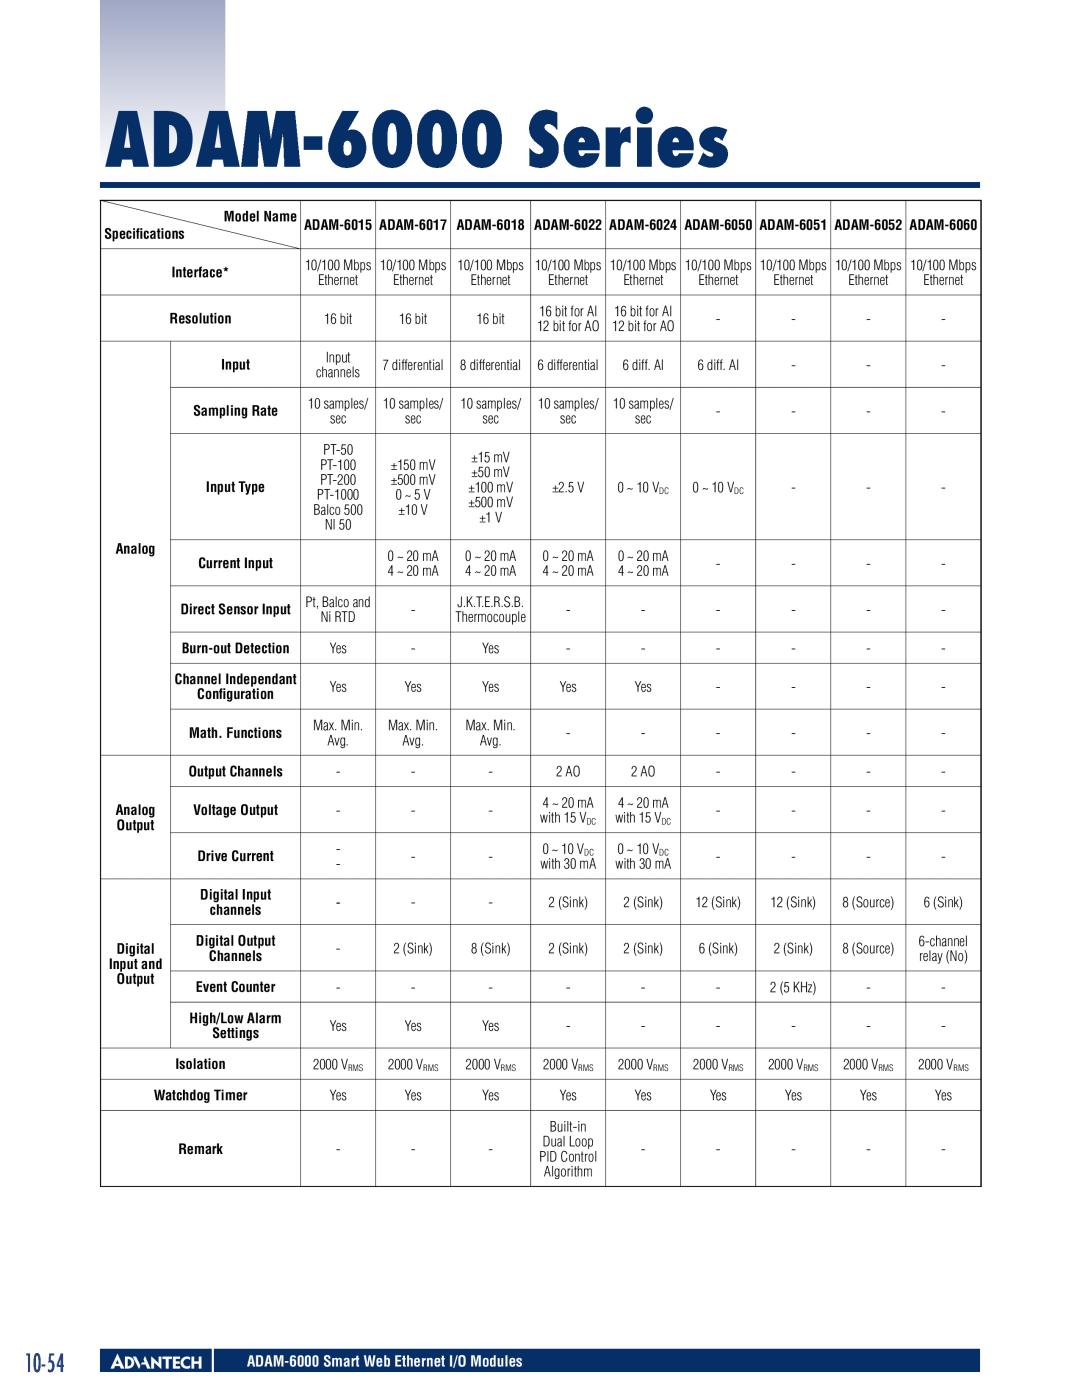 Advantech manual 10-54, ADAM-6000 Series, Specifications, Resolution, Output, ADAM-6018 